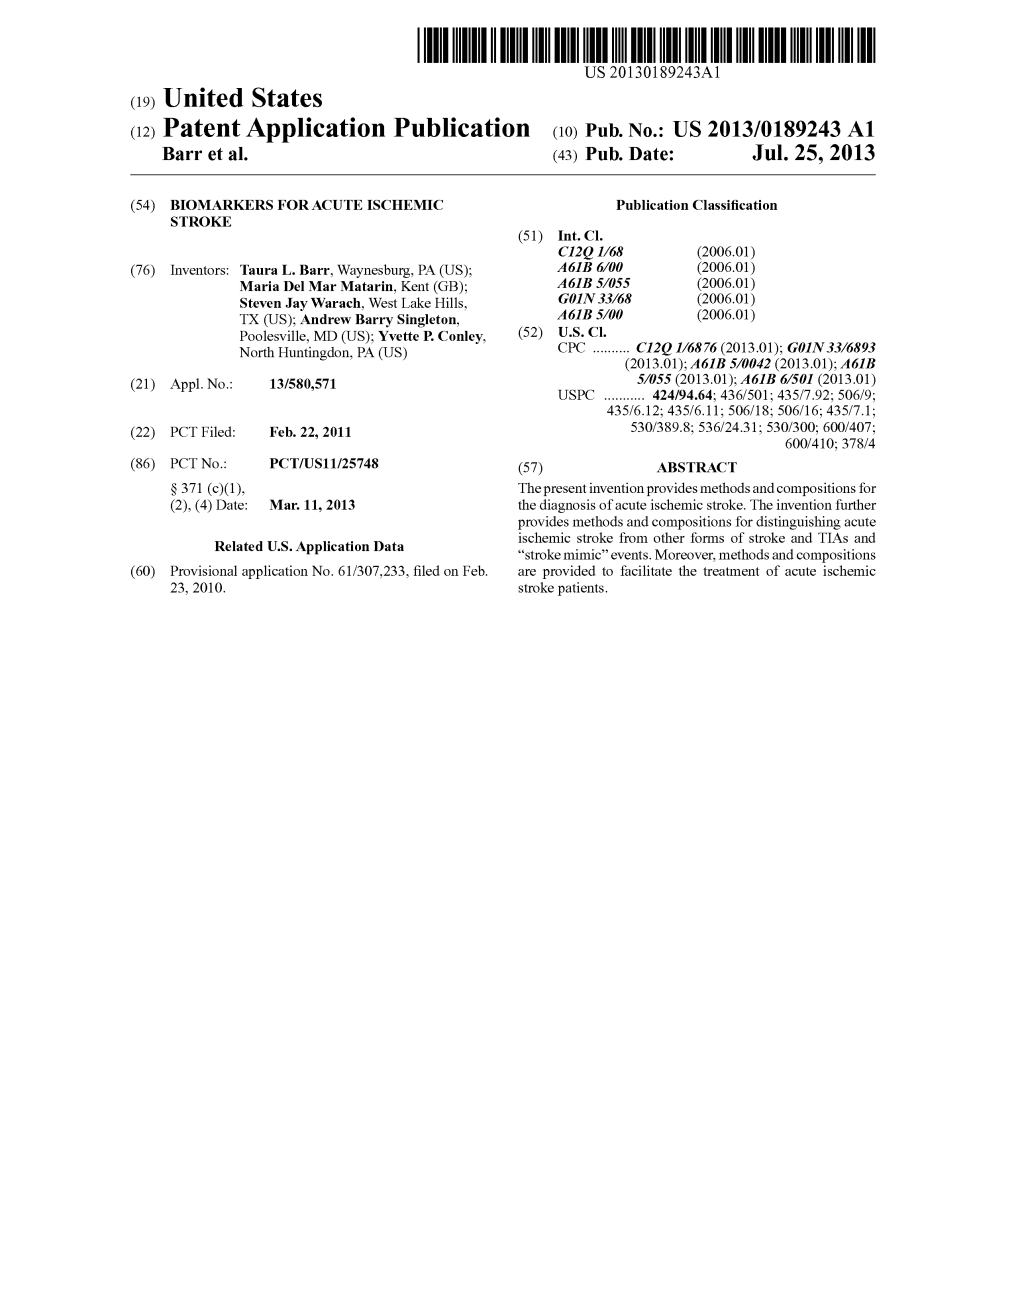 (12) Patent Application Publication (10) Pub. No.: US 2013/0189243 A1 Barr Et Al